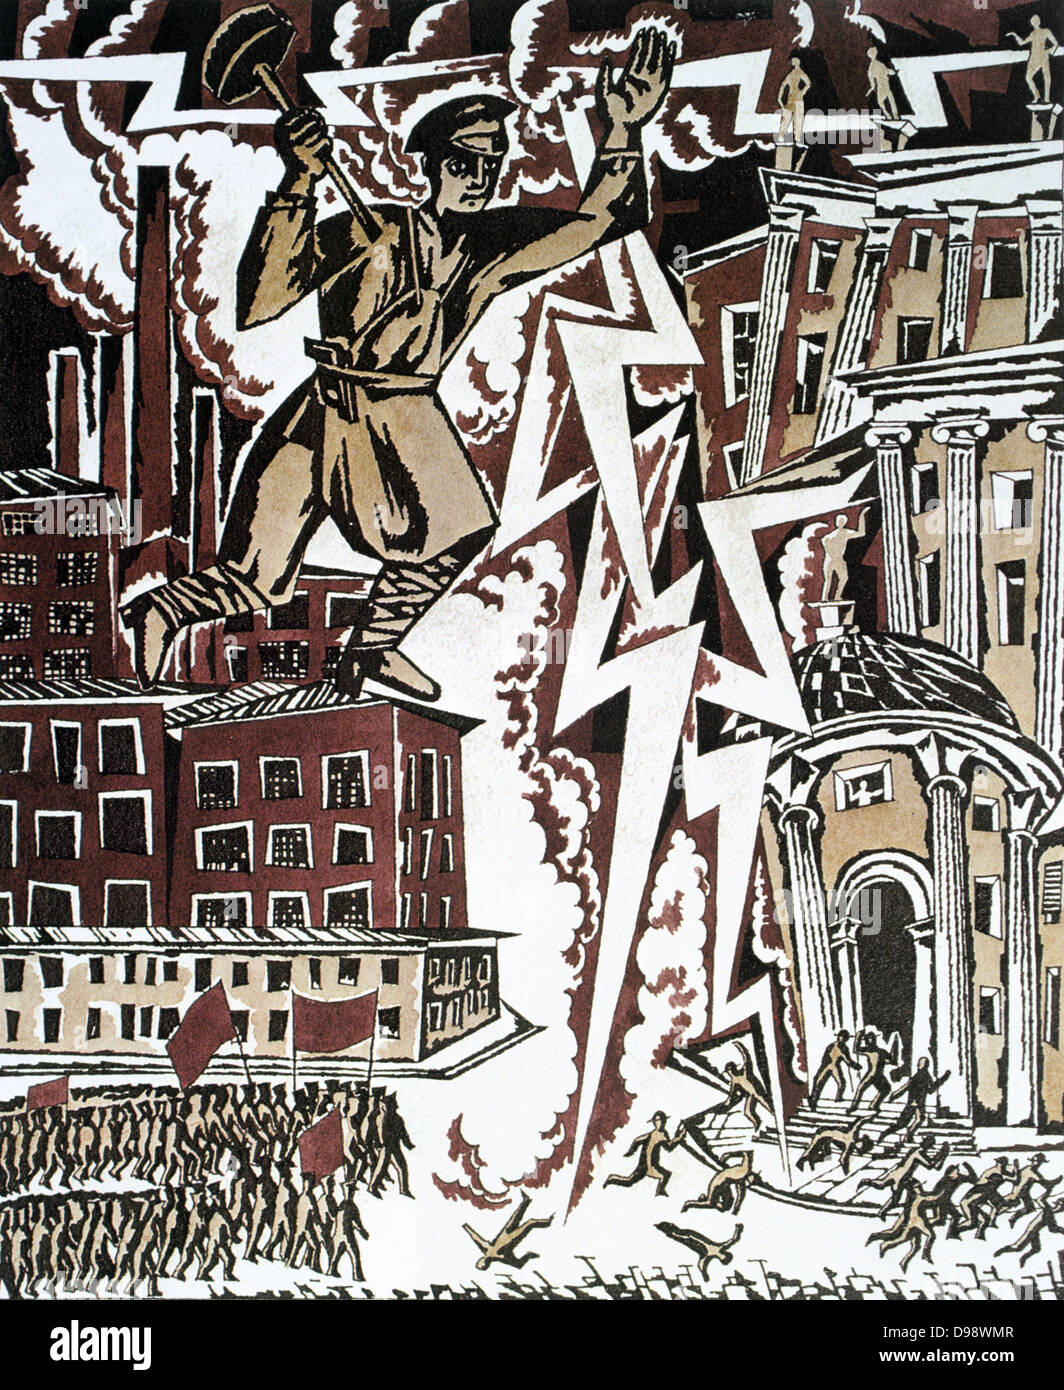 Der rote Blitz ", 1919. Design von Ignaty Nivinisky für eine sowjetische Propaganda-Plakat. Russland Sowjetunion Kommunismus Kommunist Stockfoto